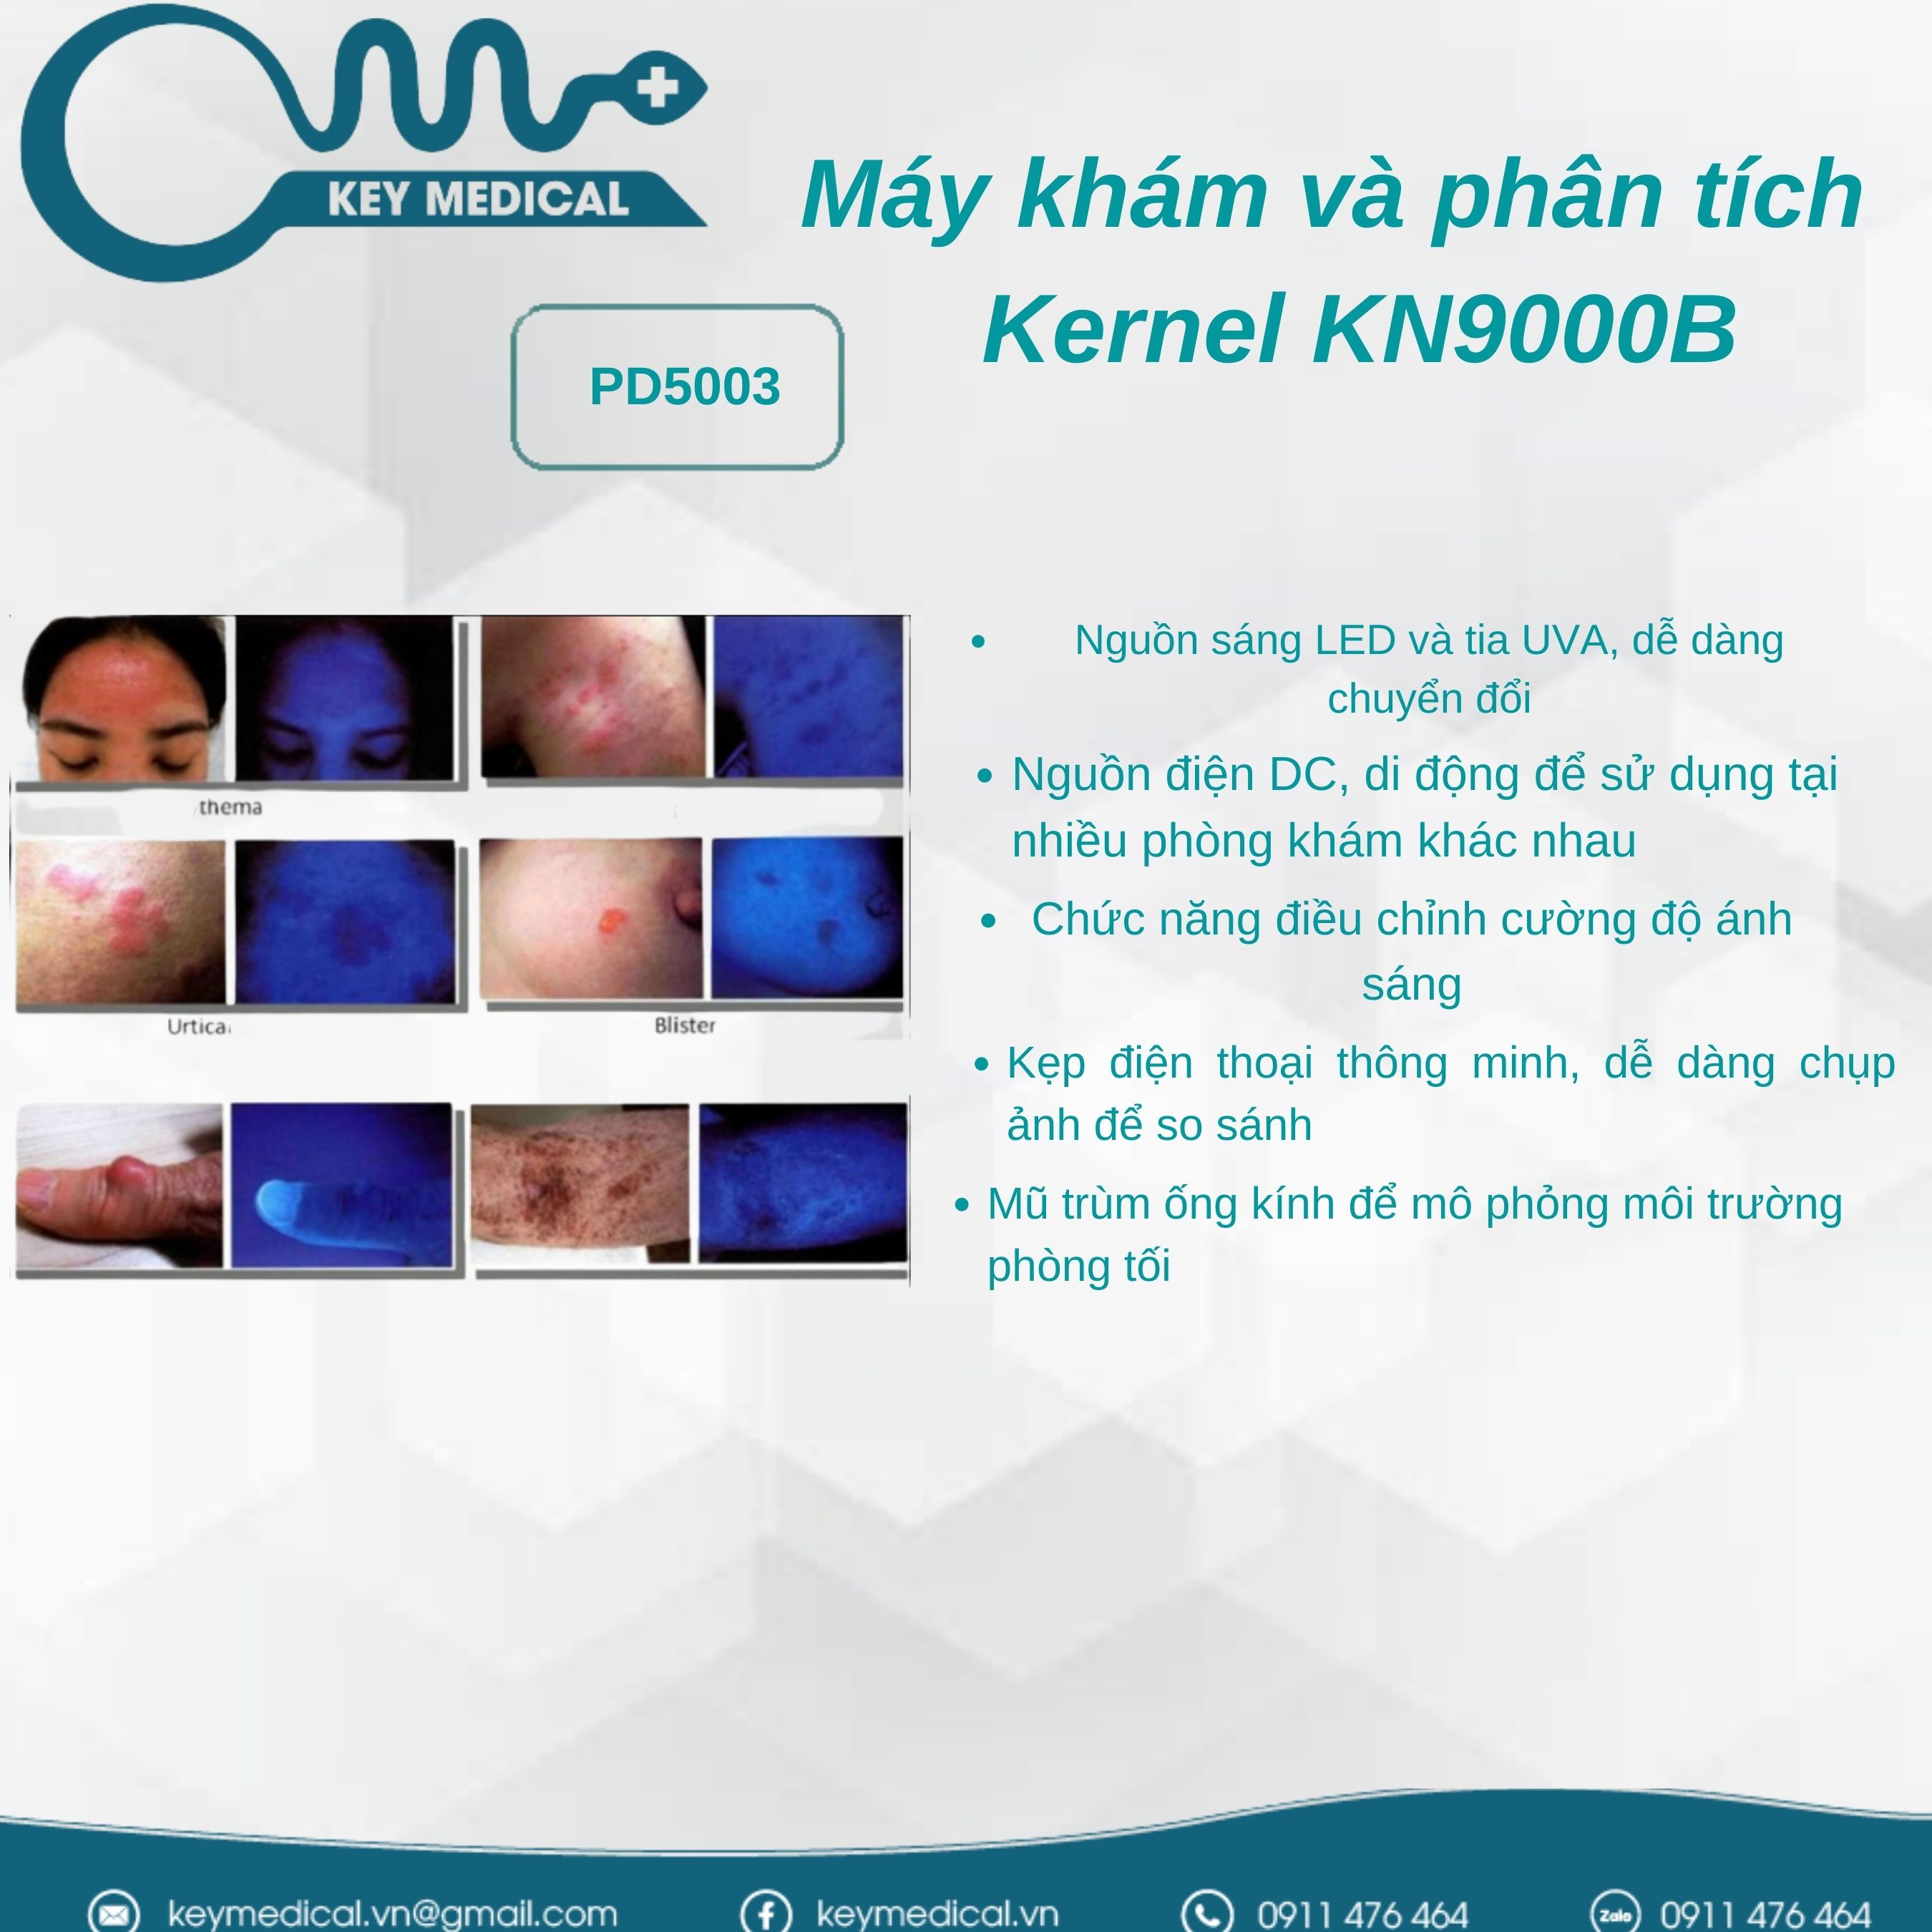 Máy khám và phân tích bệnh da liễu Kernel KN9000B